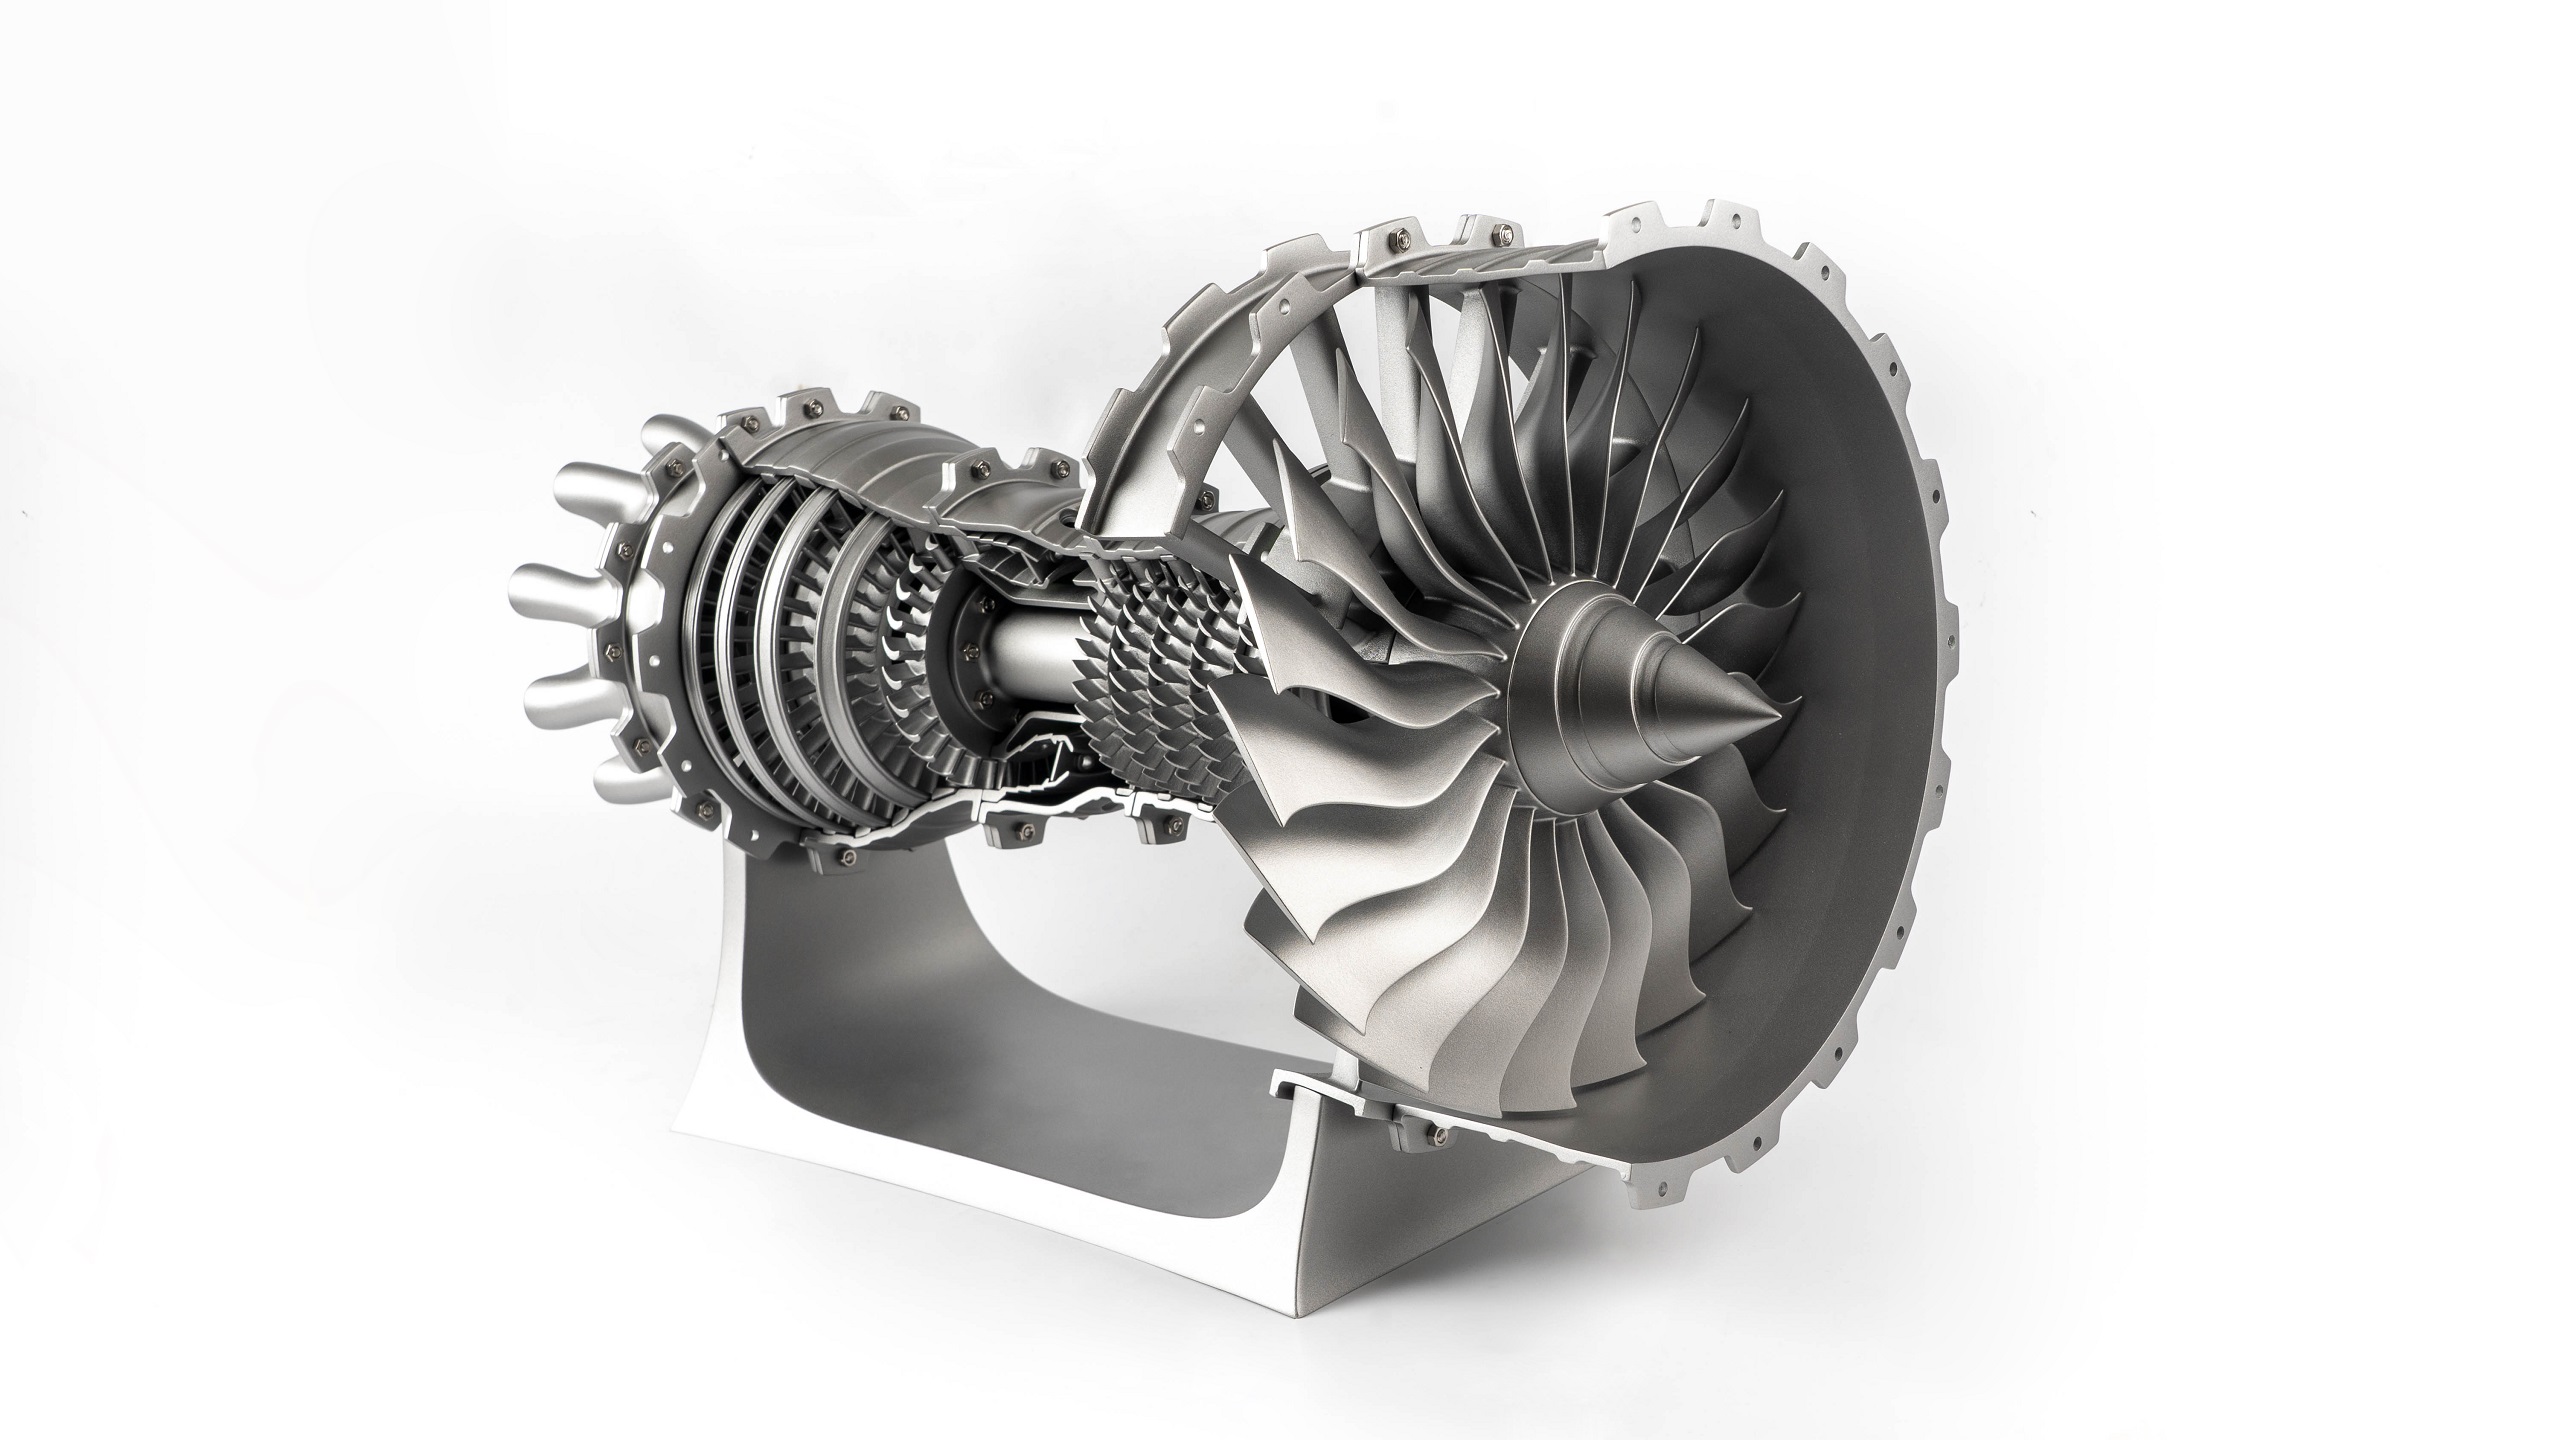 3D Printed Engines